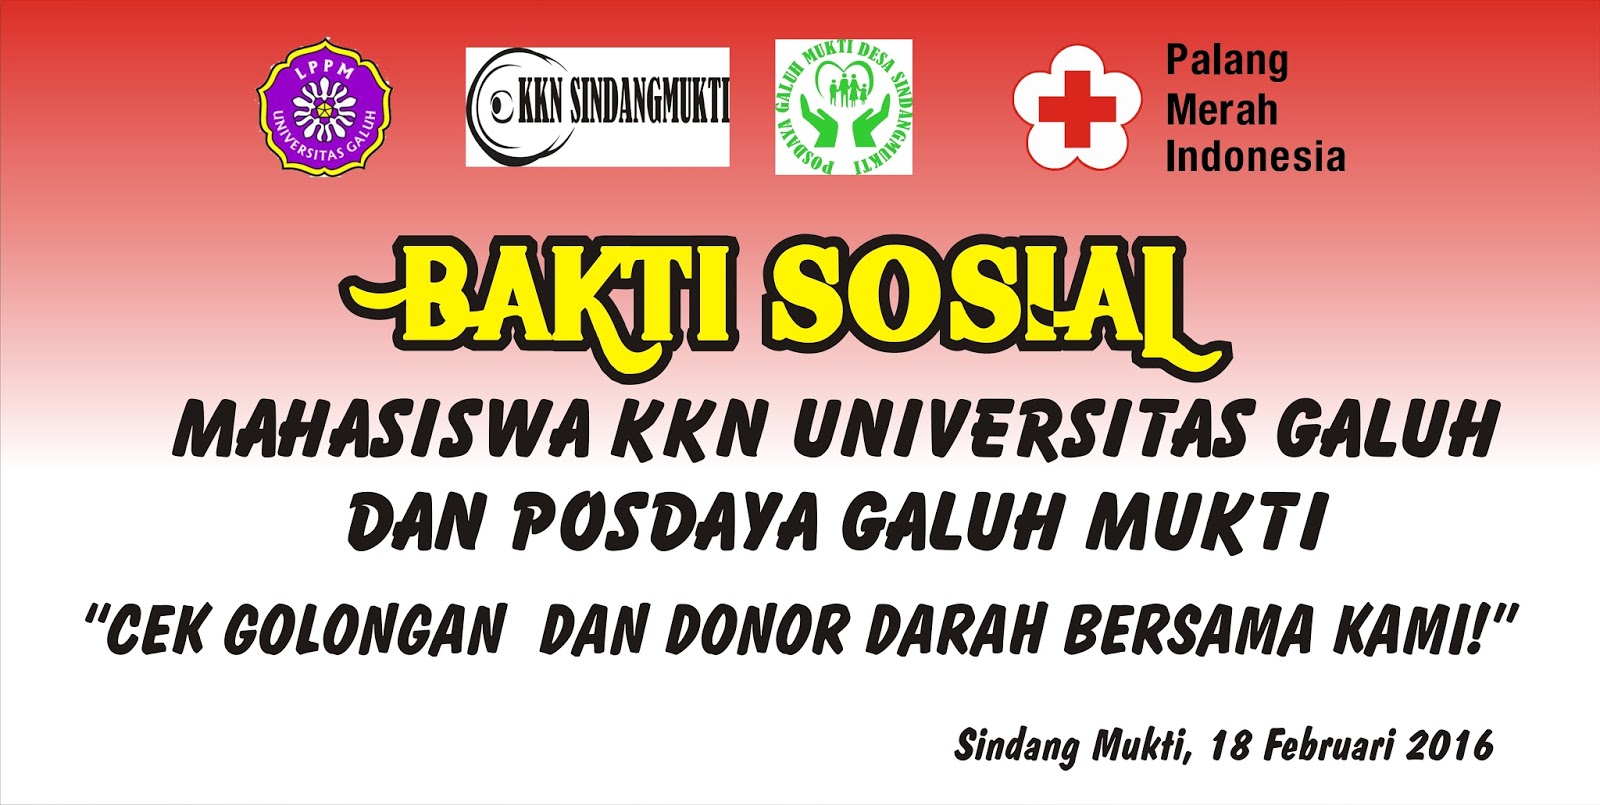 Download Contoh Spanduk Bakti Sosial cdr KARYAKU